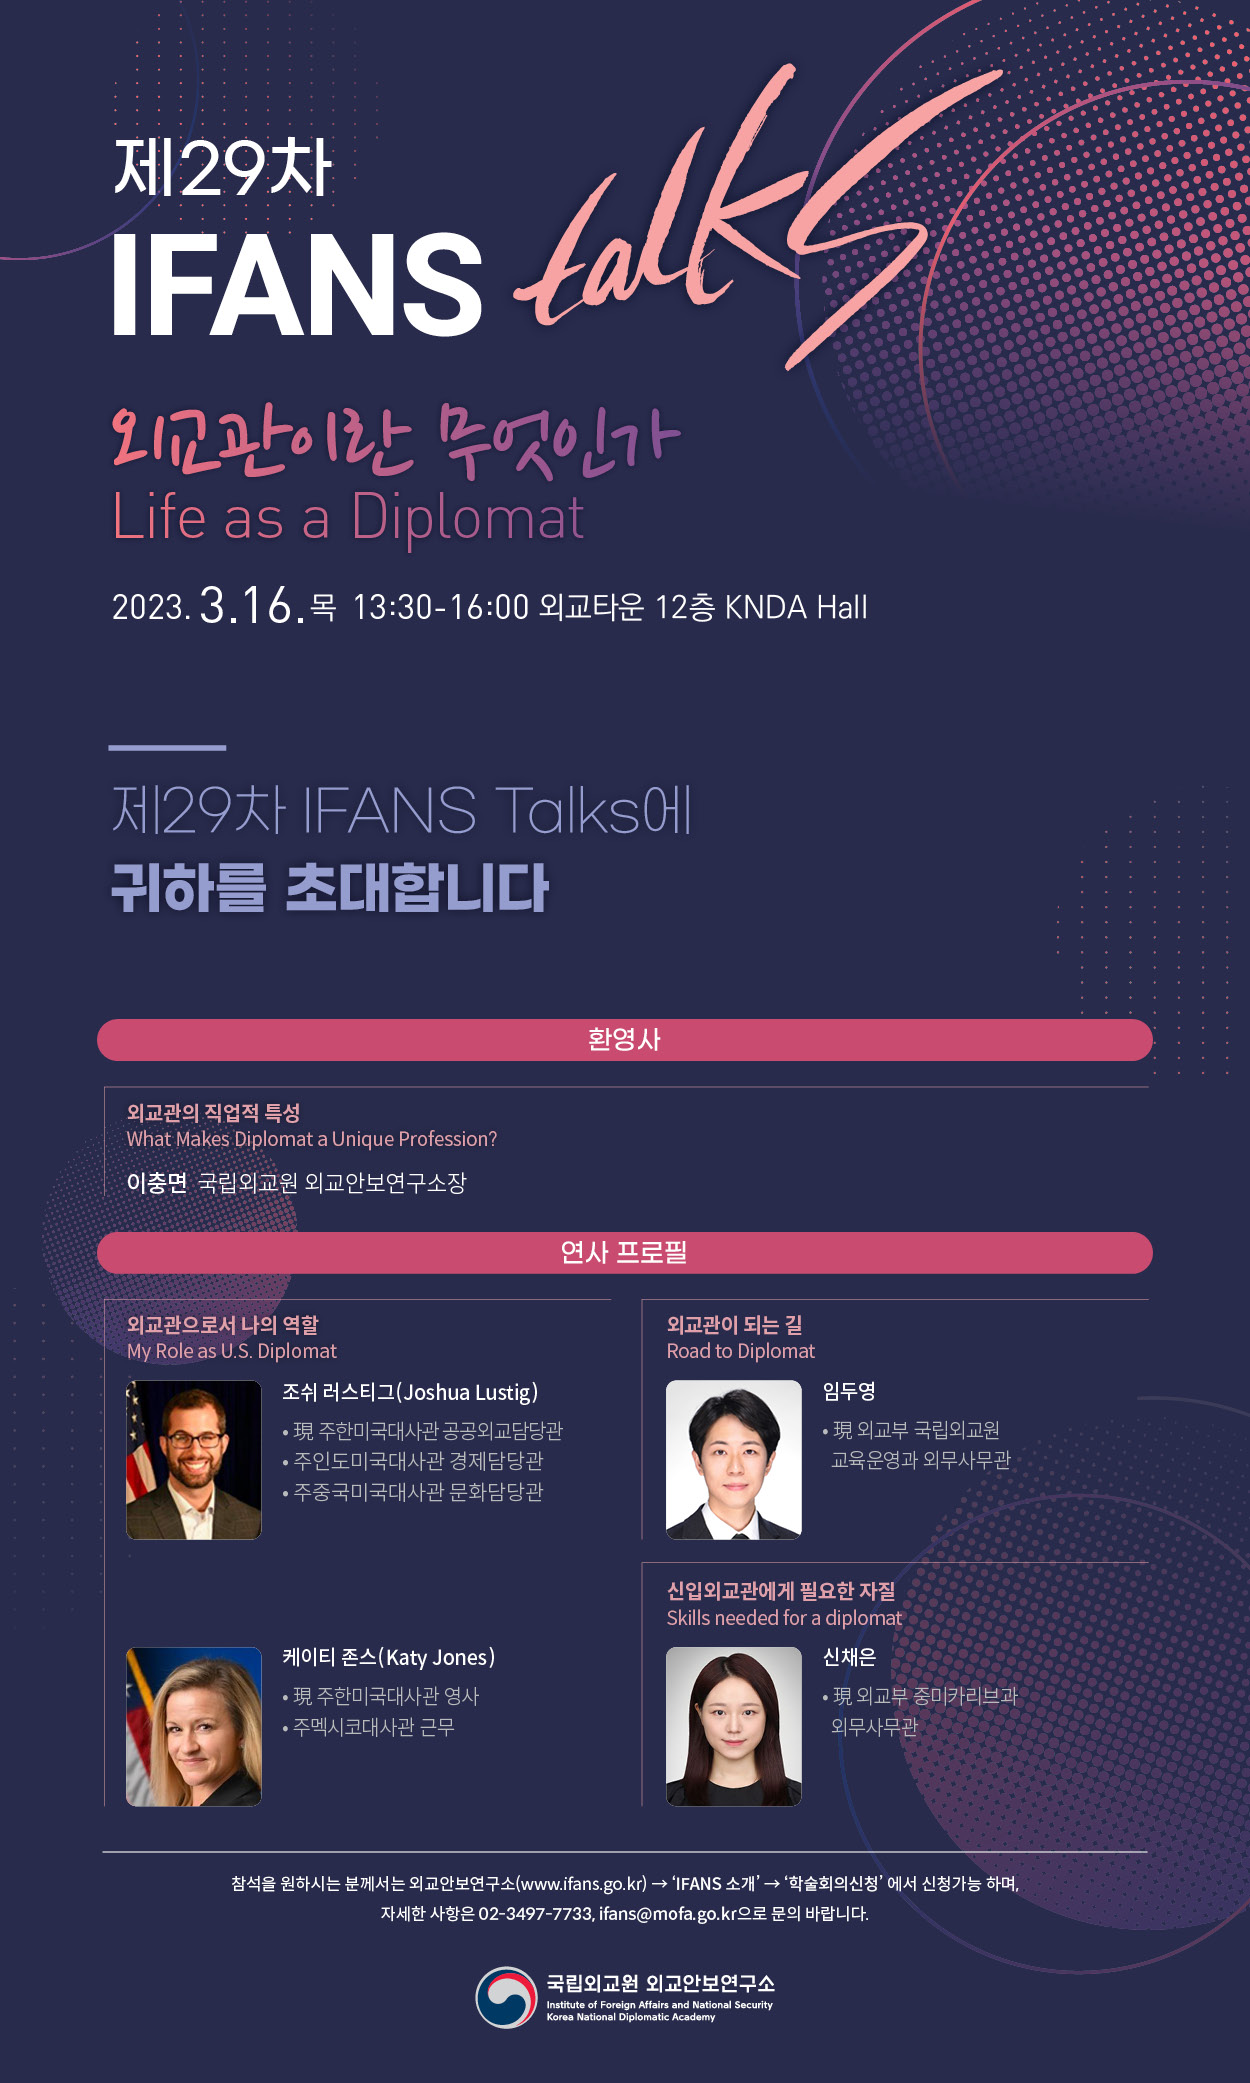 제 29차 IFANS Talks 개최(3.16)